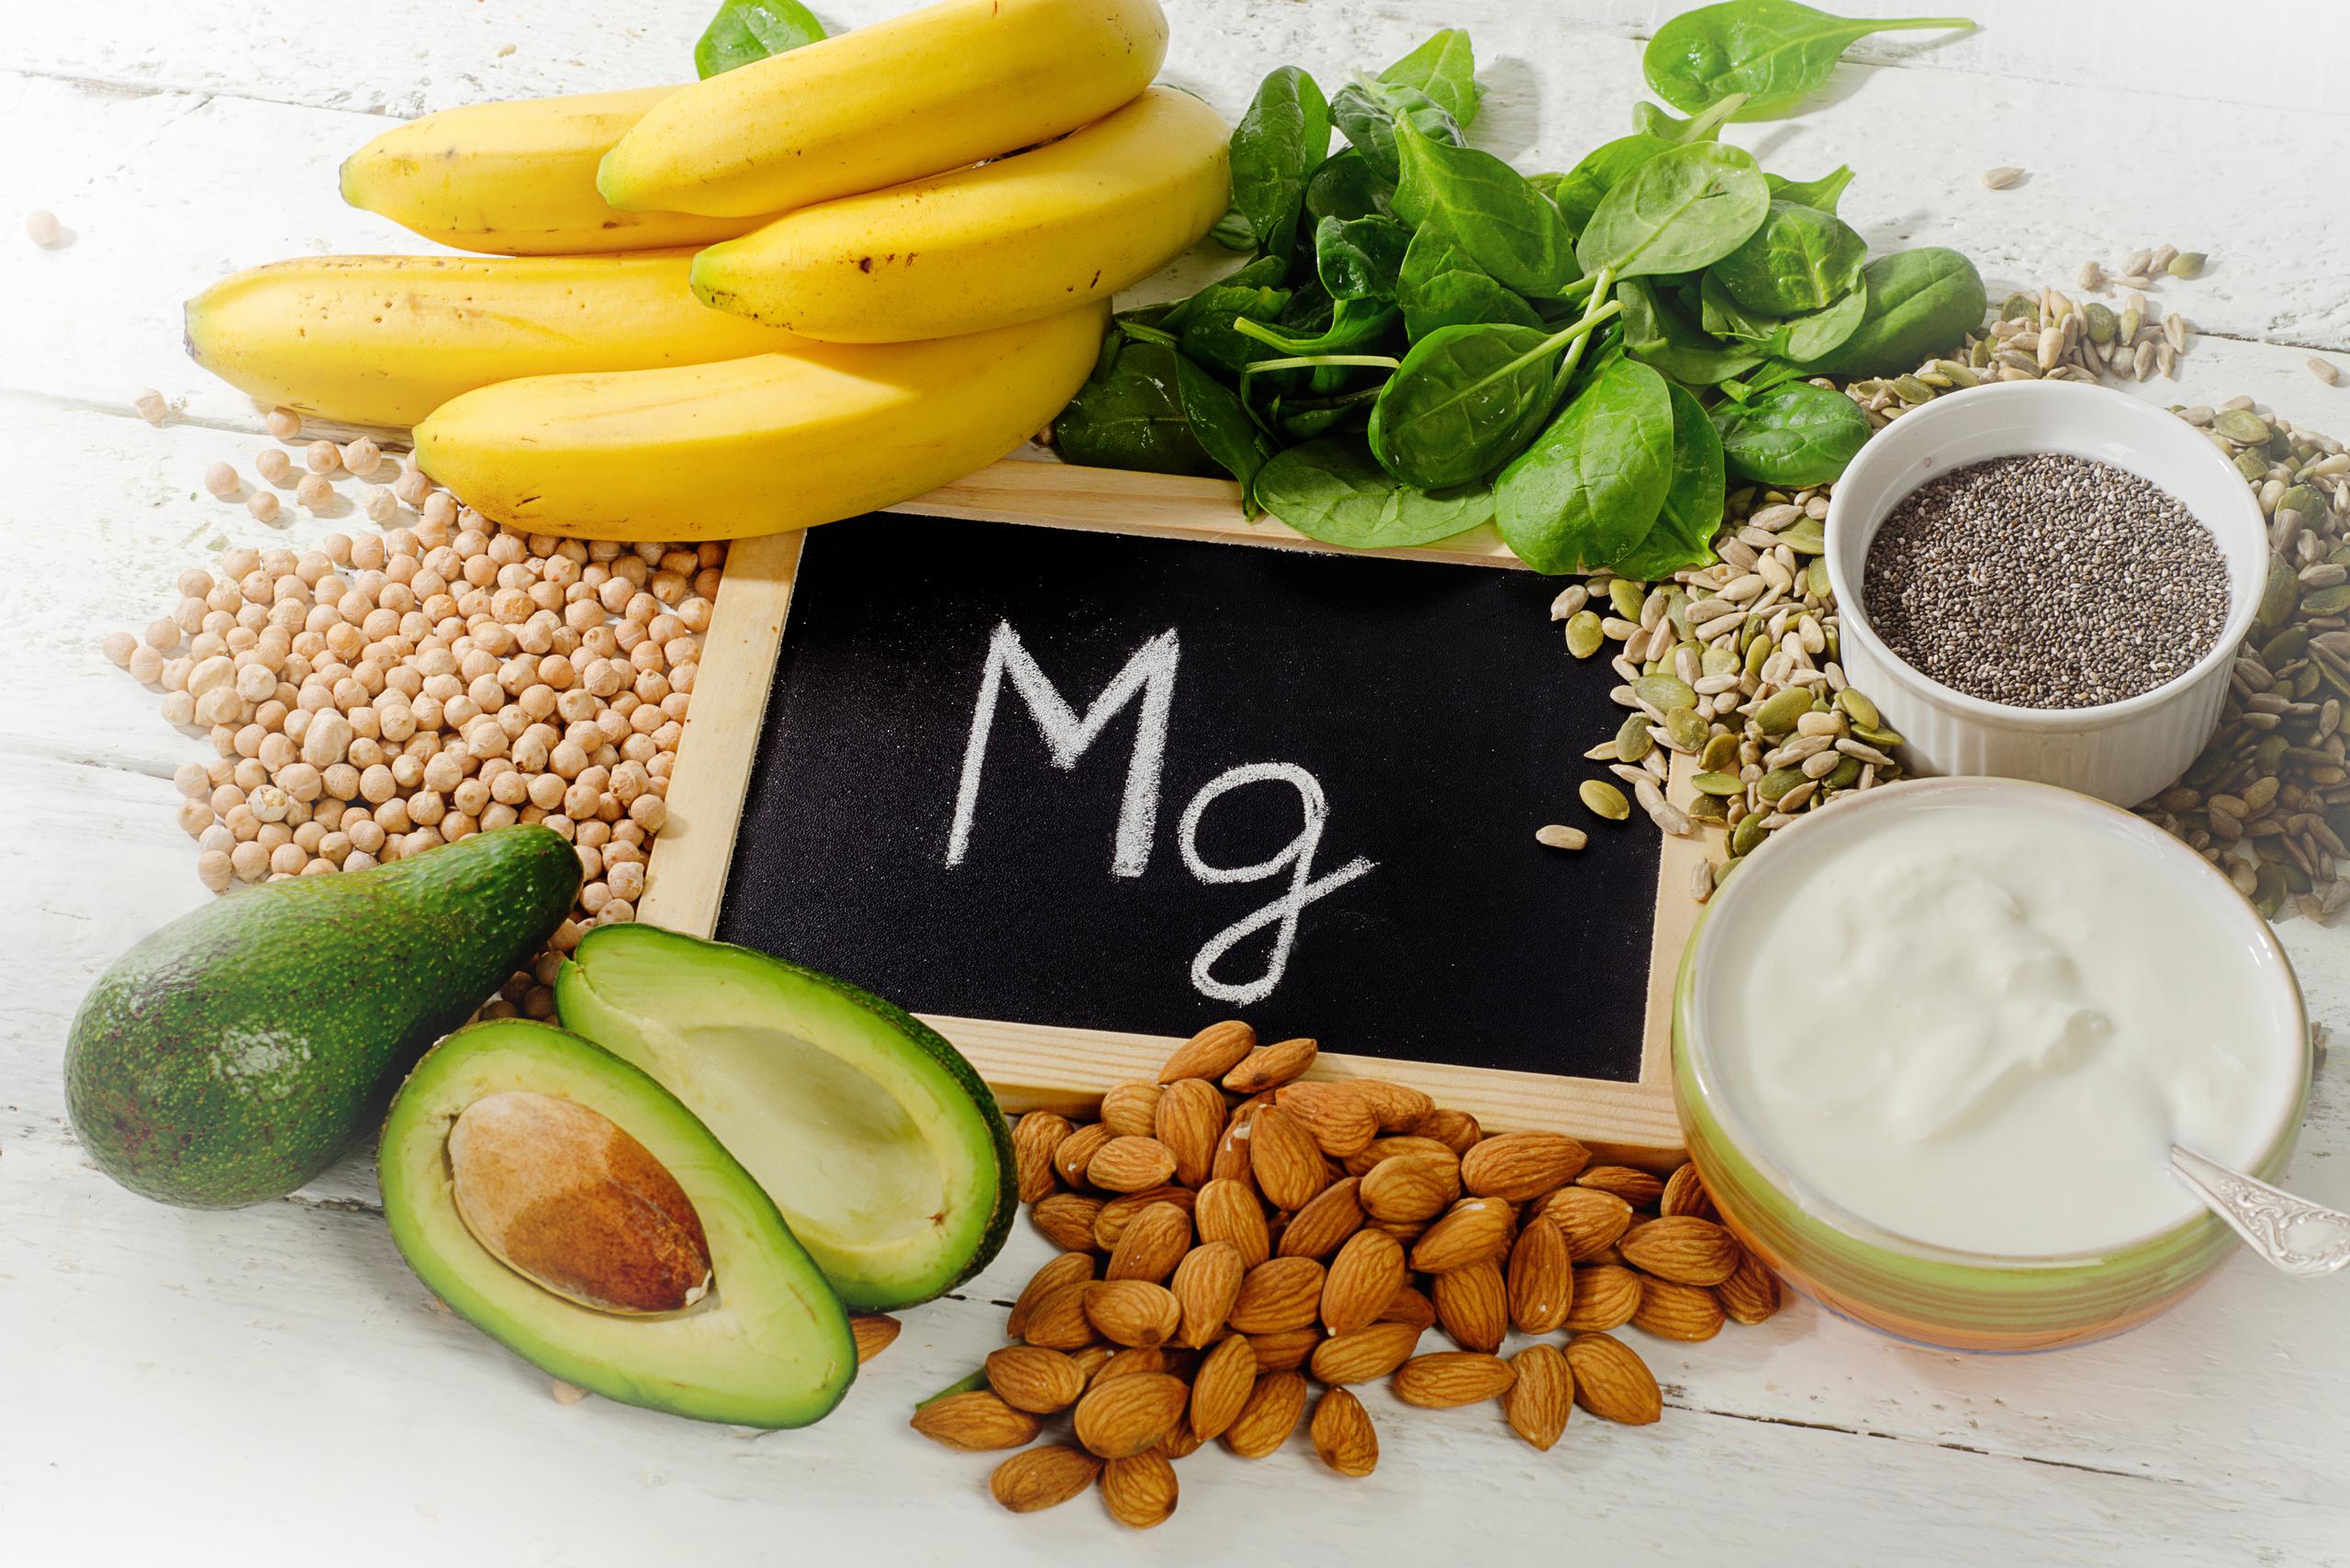 El magnesio es un mineral que se puede adquirir llevando una dieta sana, libre de alimentos ultraprocesados.